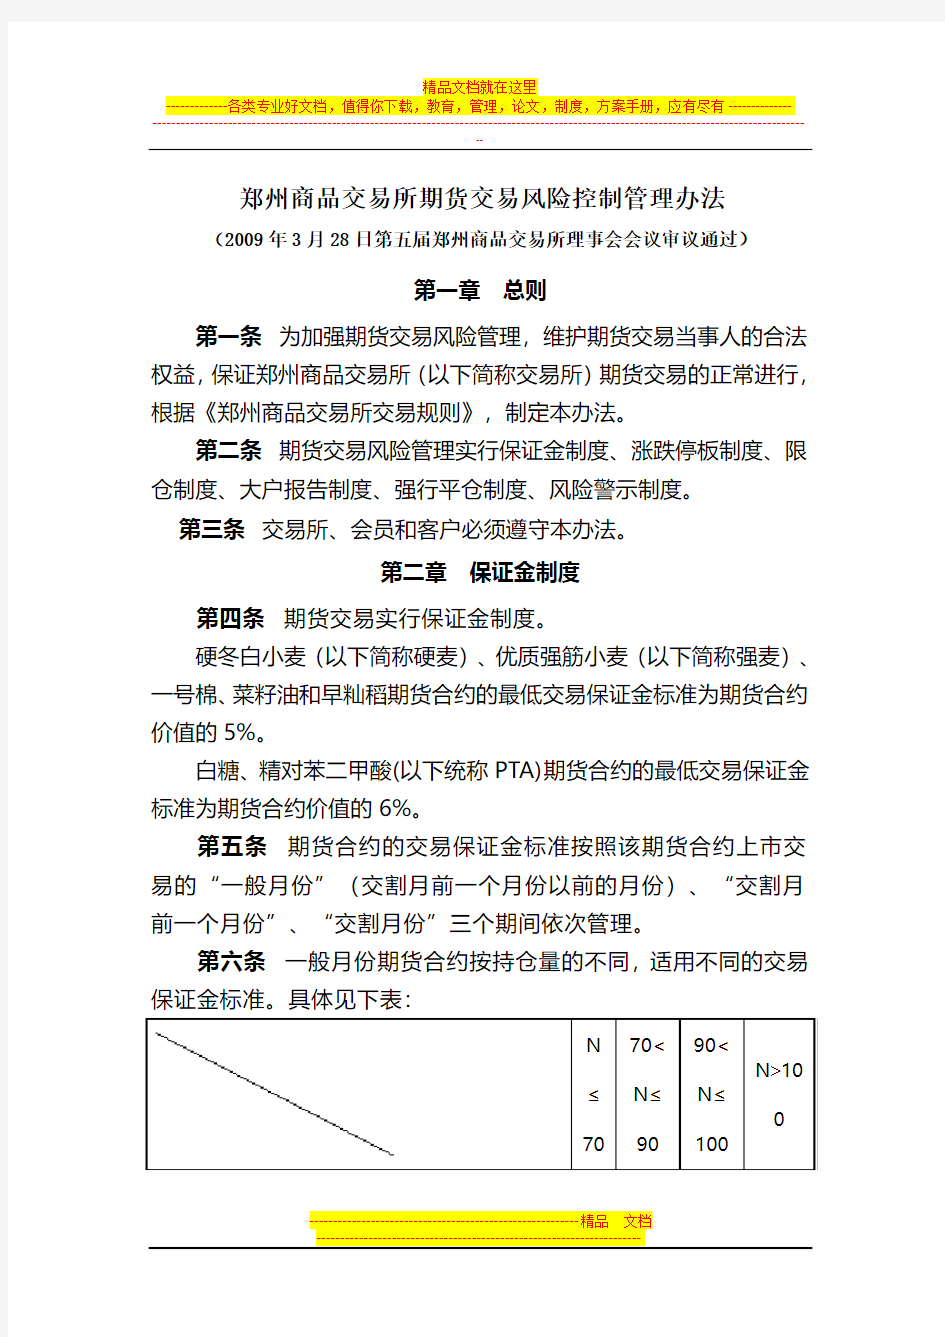 (简体)郑州商品交易所期货交易风险控制管理办法